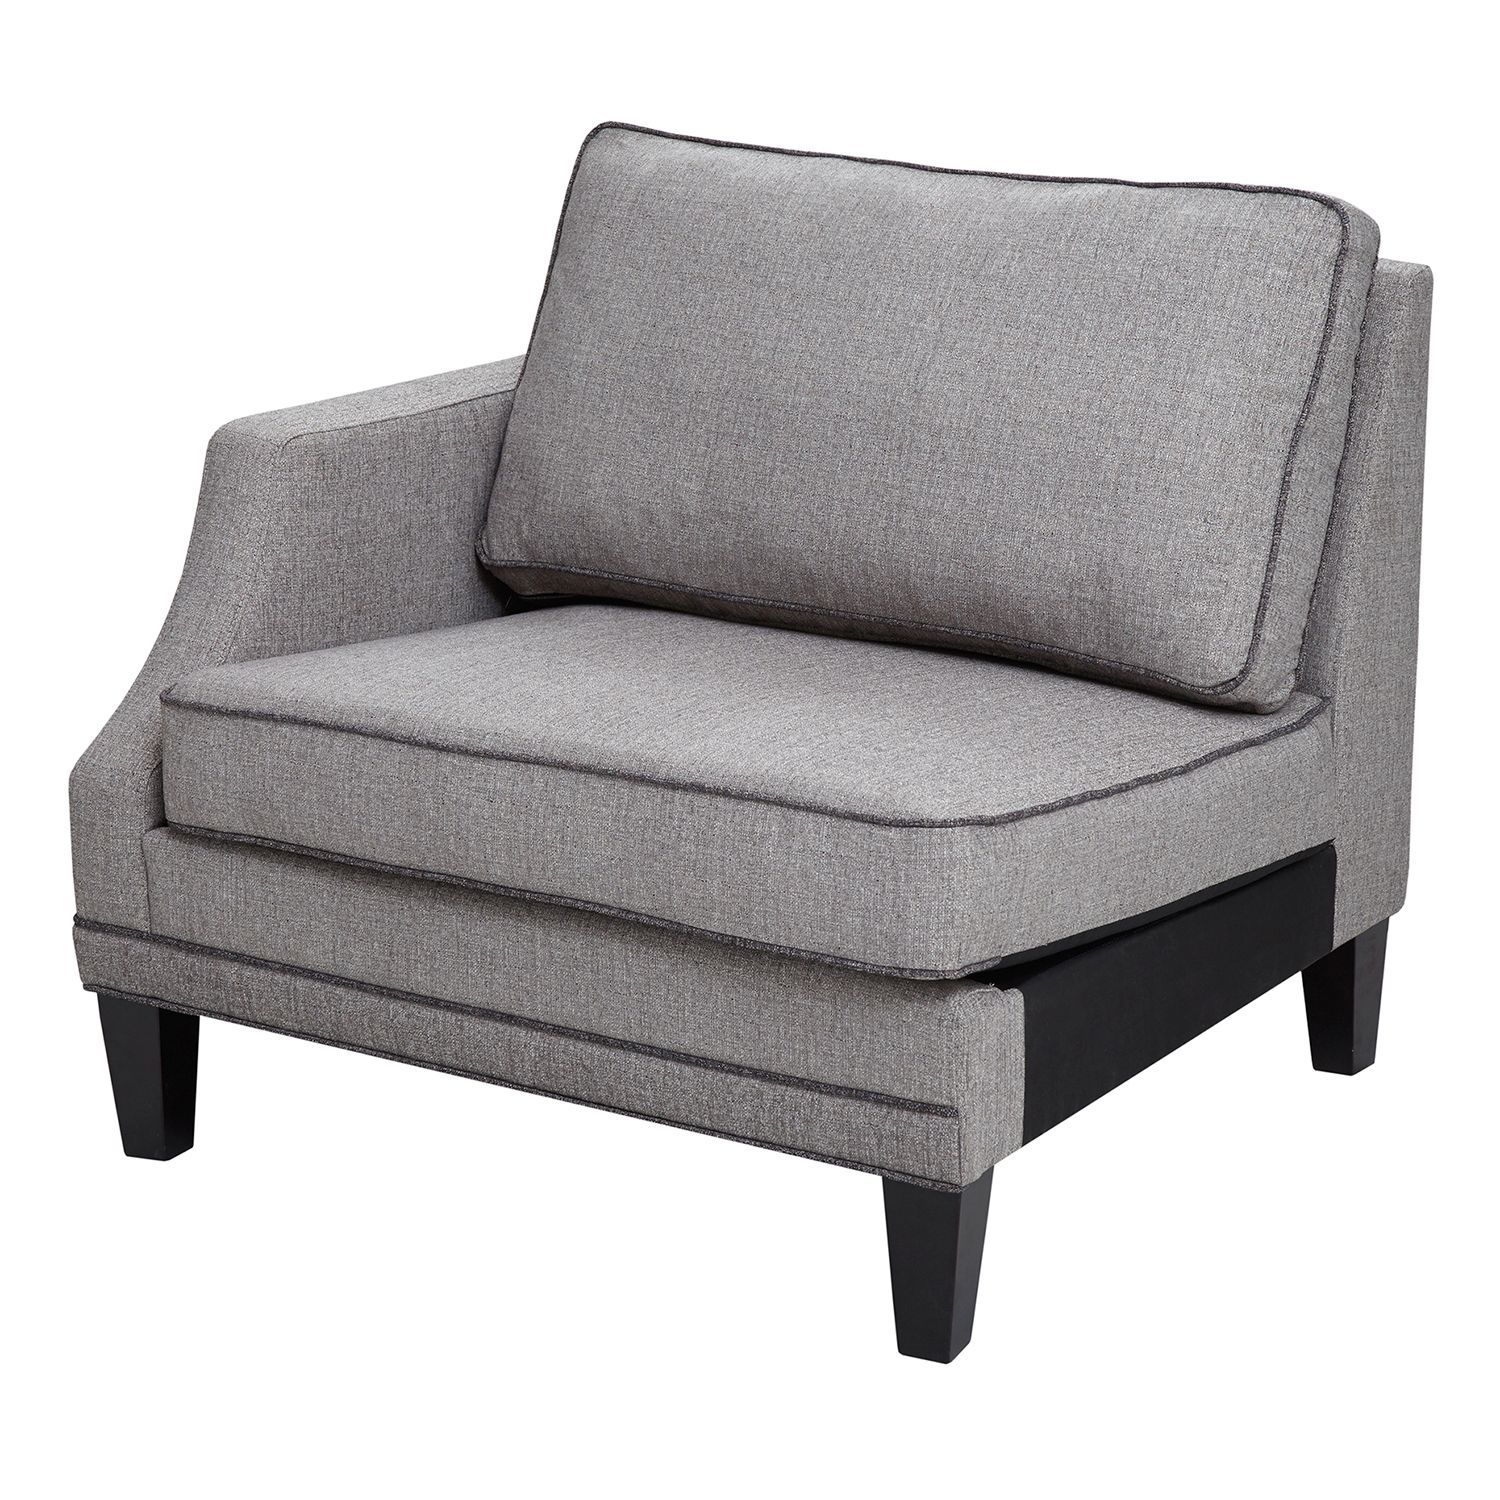 A Comfortable Choice: The Gordon Arm Sofa
Chair